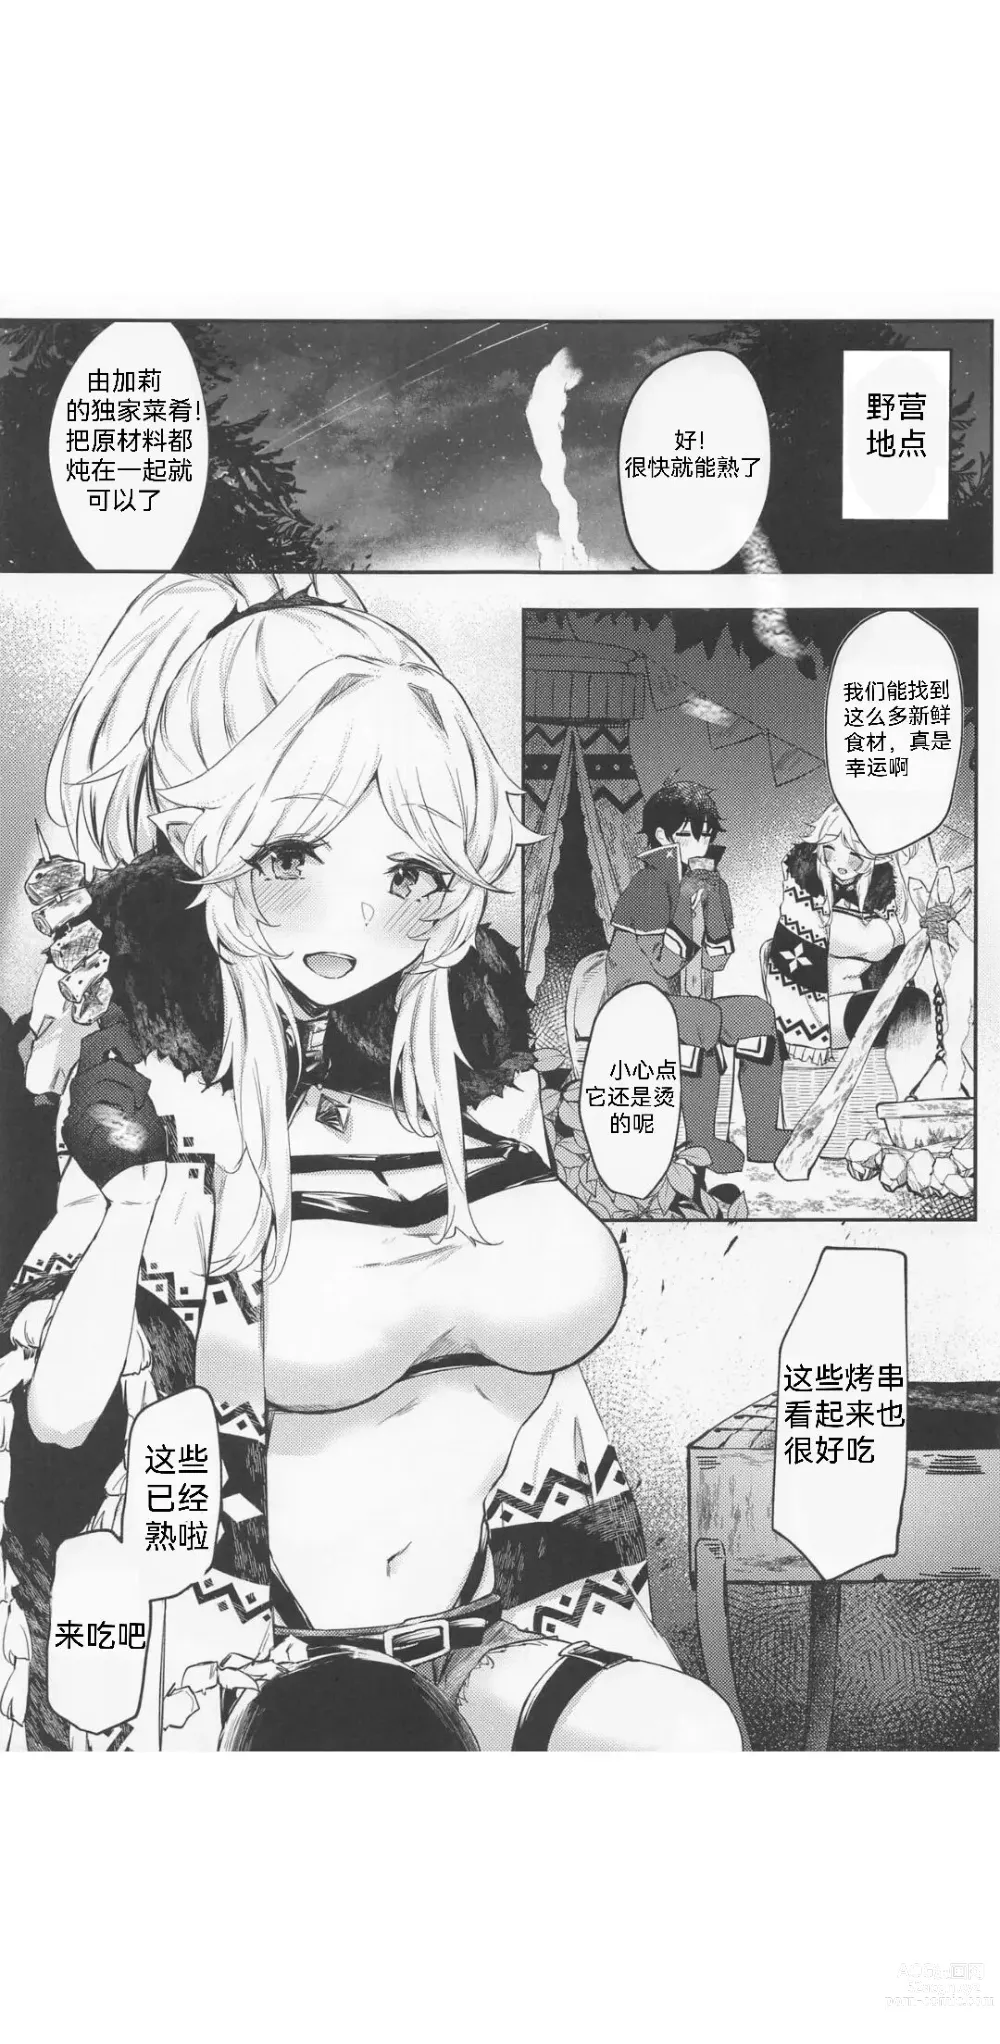 Page 3 of doujinshi Saikou no Ippai o Kimi ni